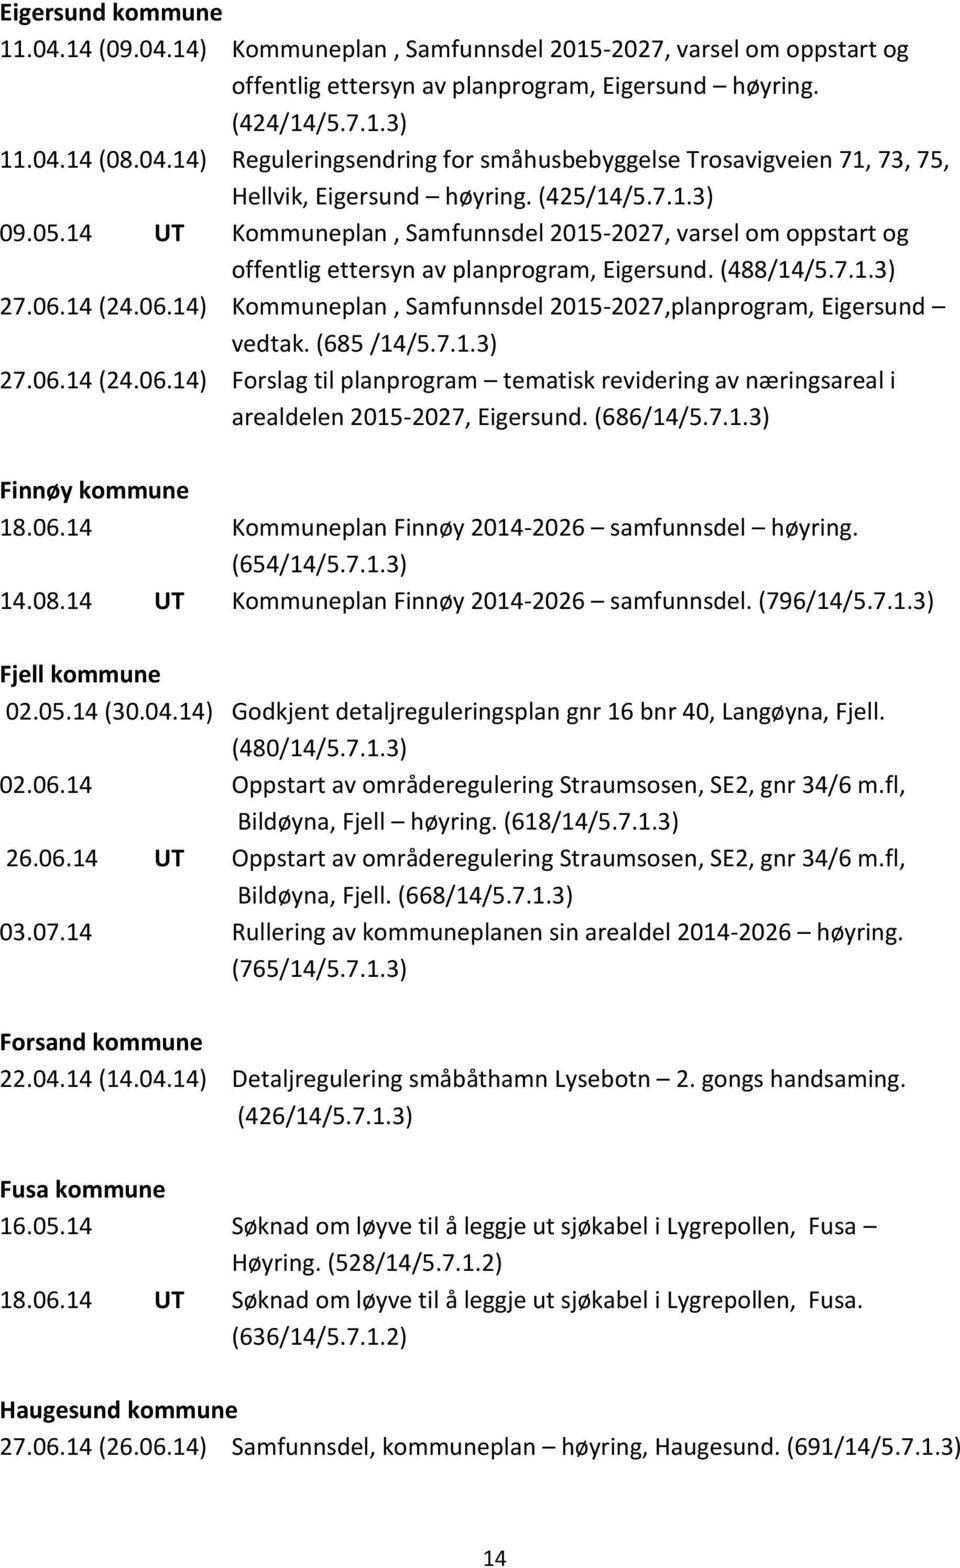 14 (24.06.14) Kommuneplan, Samfunnsdel 2015-2027,planprogram, Eigersund vedtak. (685 /14/5.7.1.3) 27.06.14 (24.06.14) Forslag til planprogram tematisk revidering av næringsareal i arealdelen 2015-2027, Eigersund.